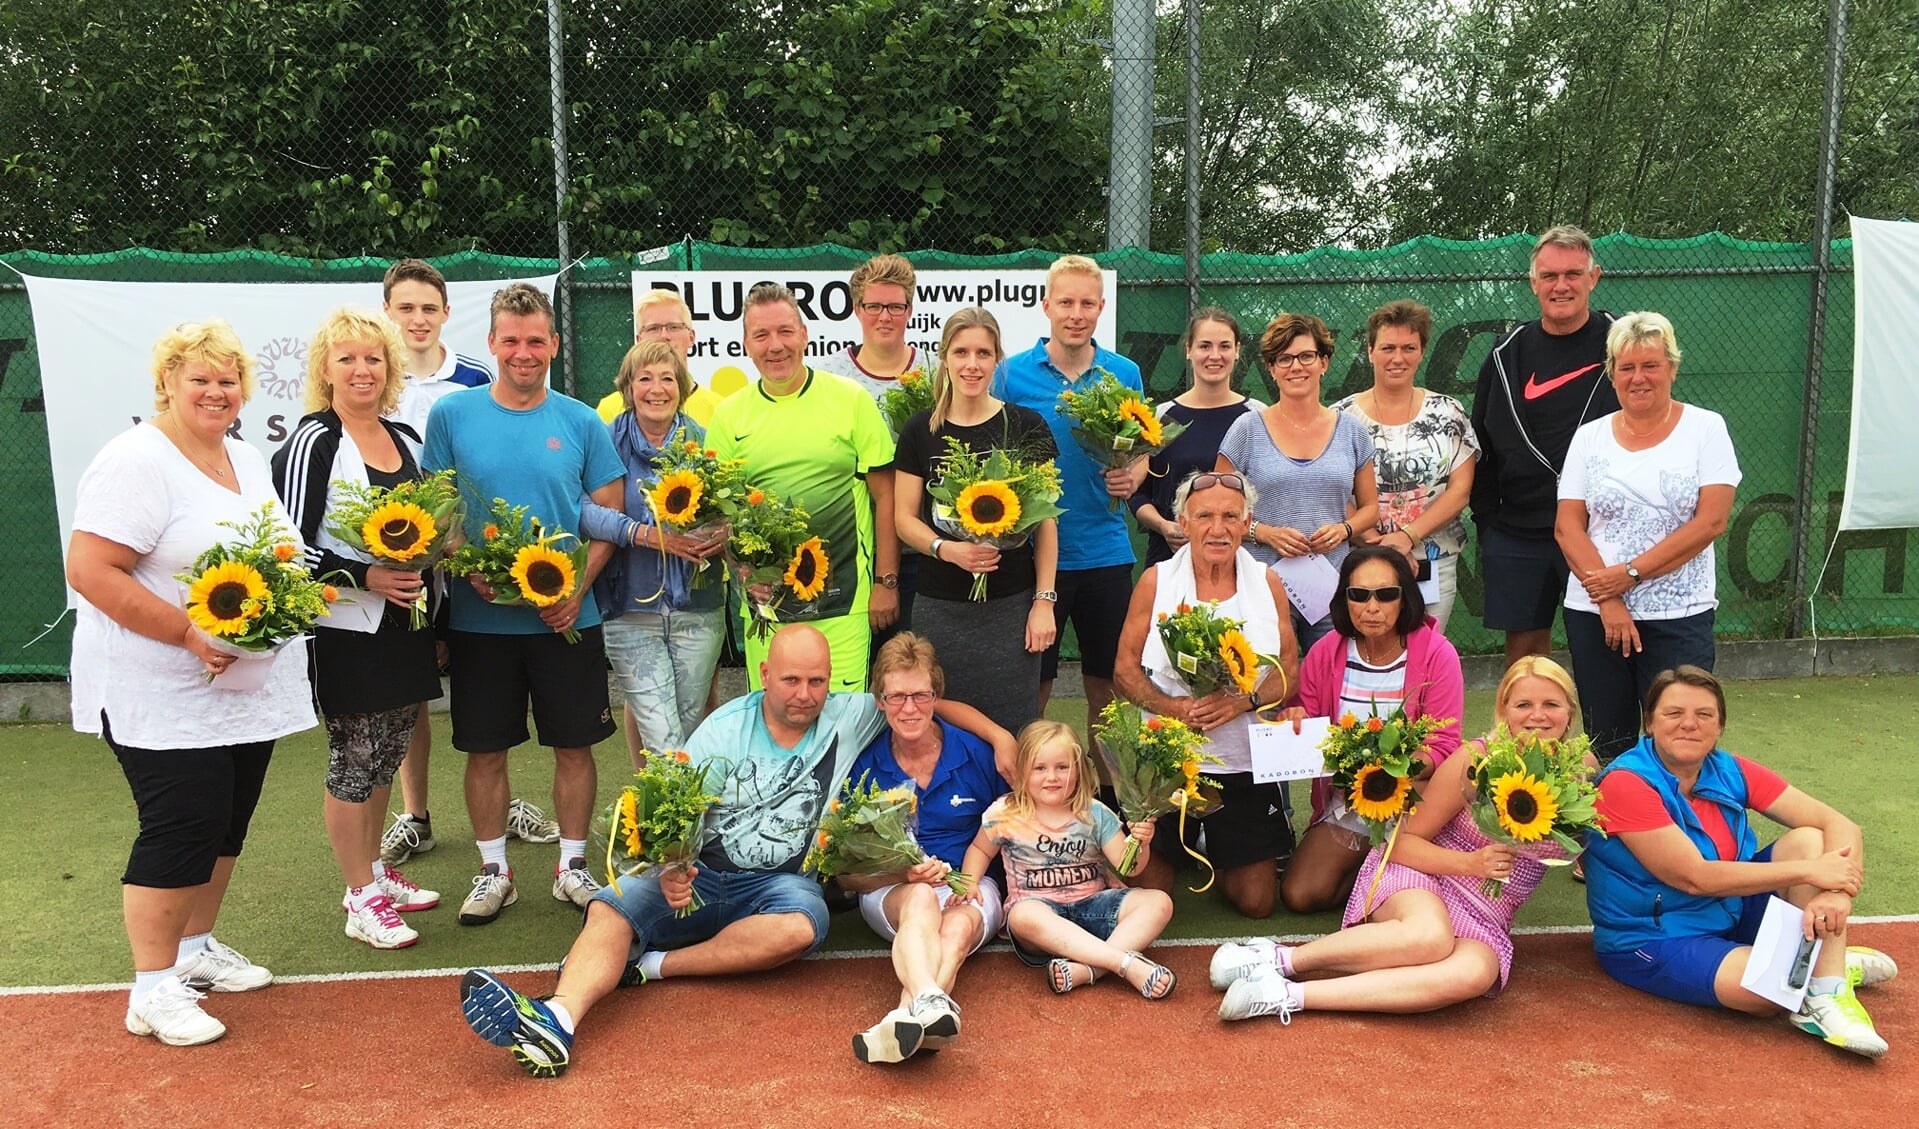 • De finalisten van het Versluis Optiek Open senioren tennistoernooi.